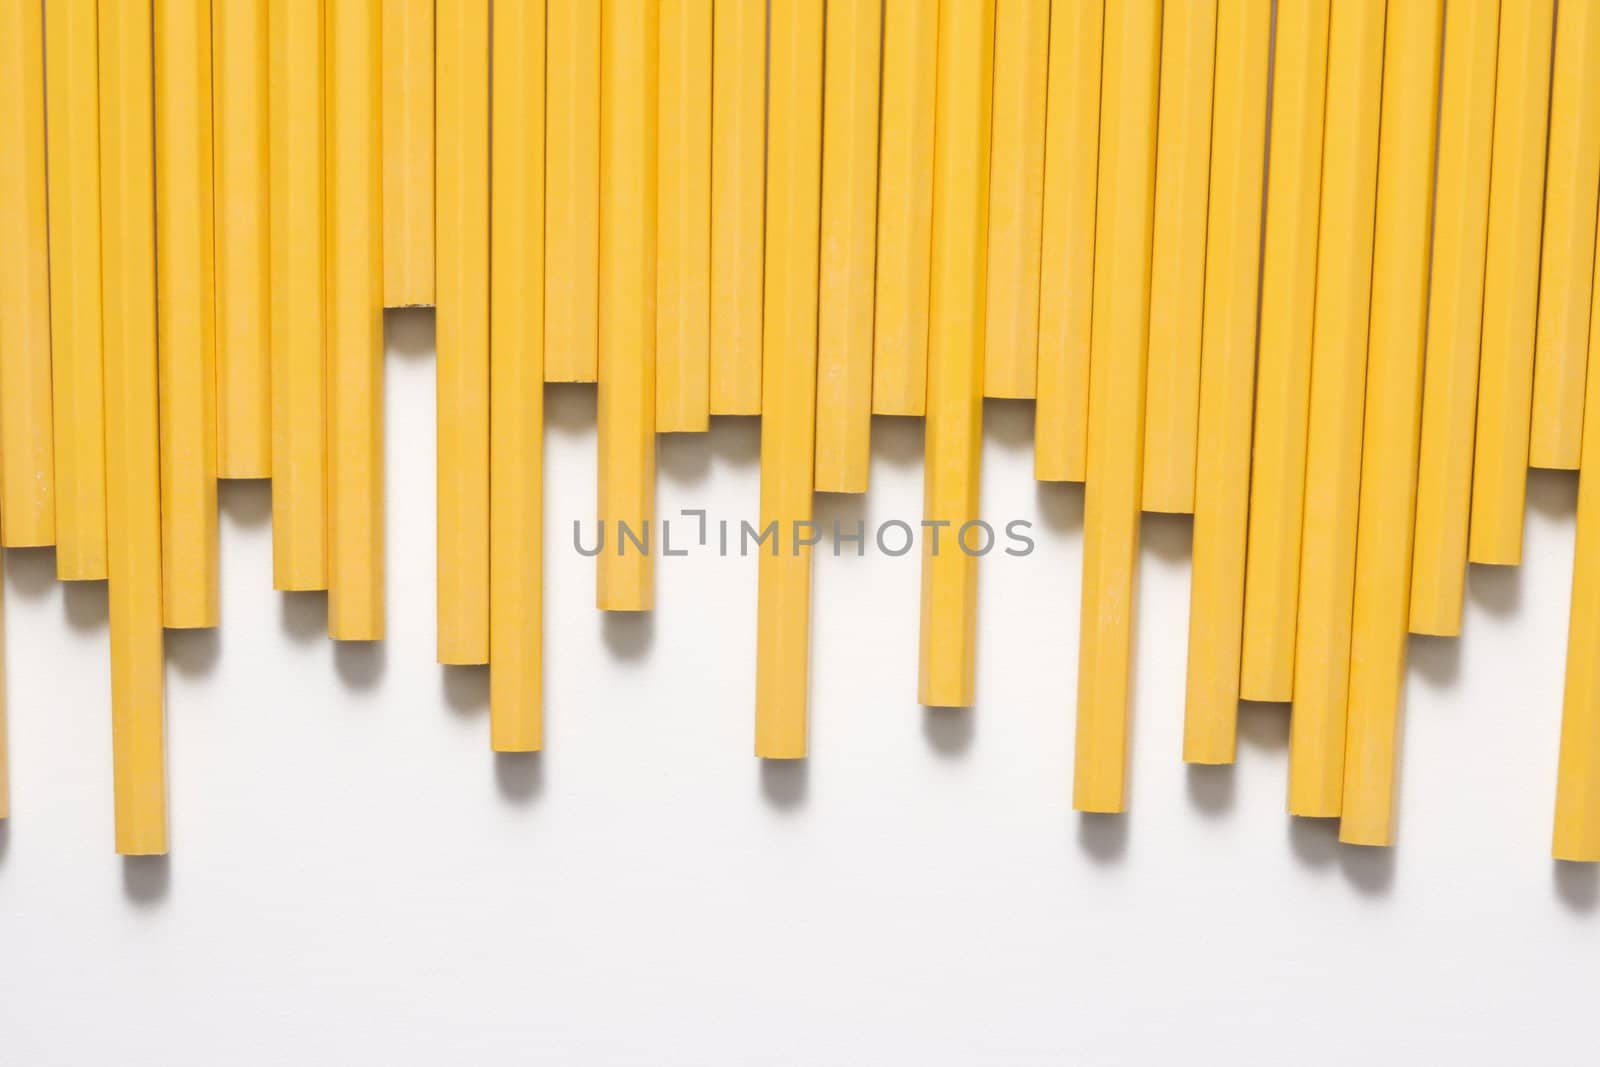 Uneven row of unsharpened pencils.